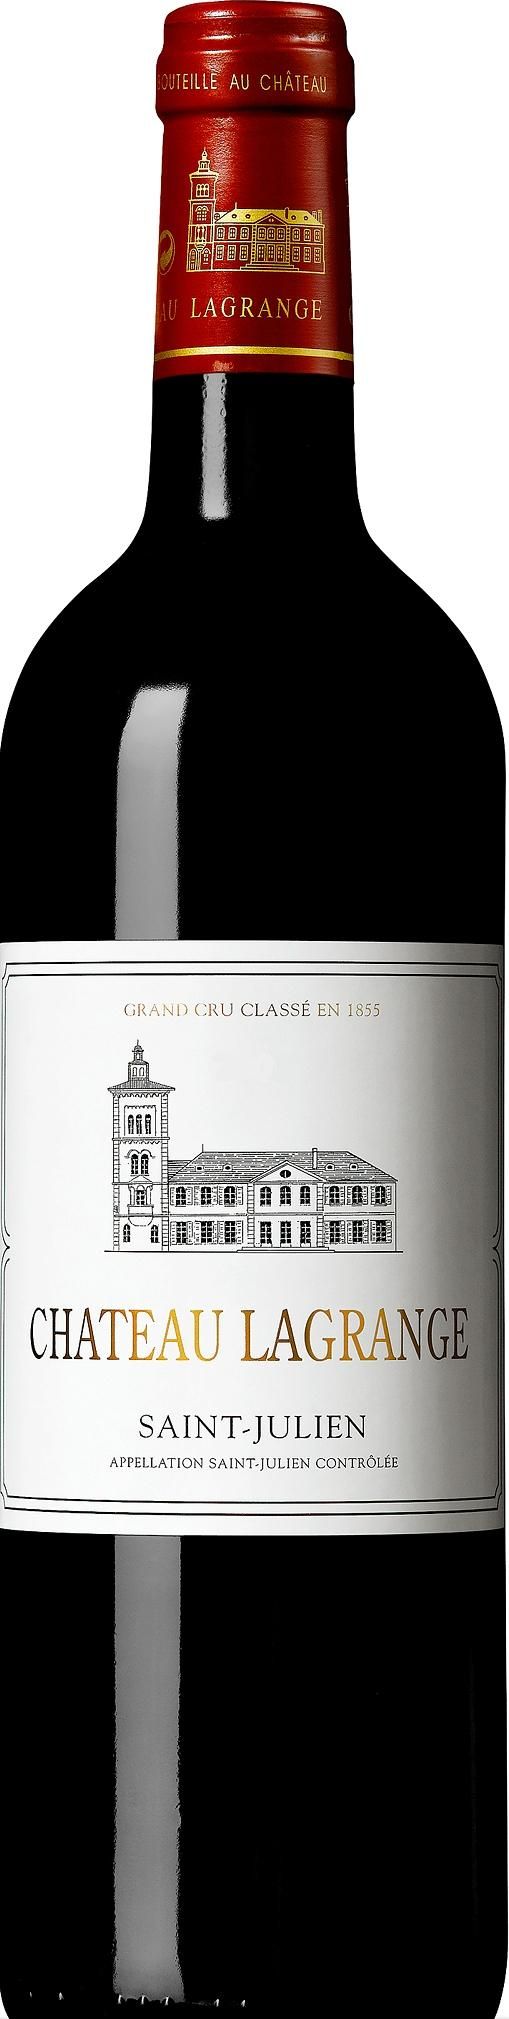 Chateau Lagrange, Grand Cru Classe, 2016